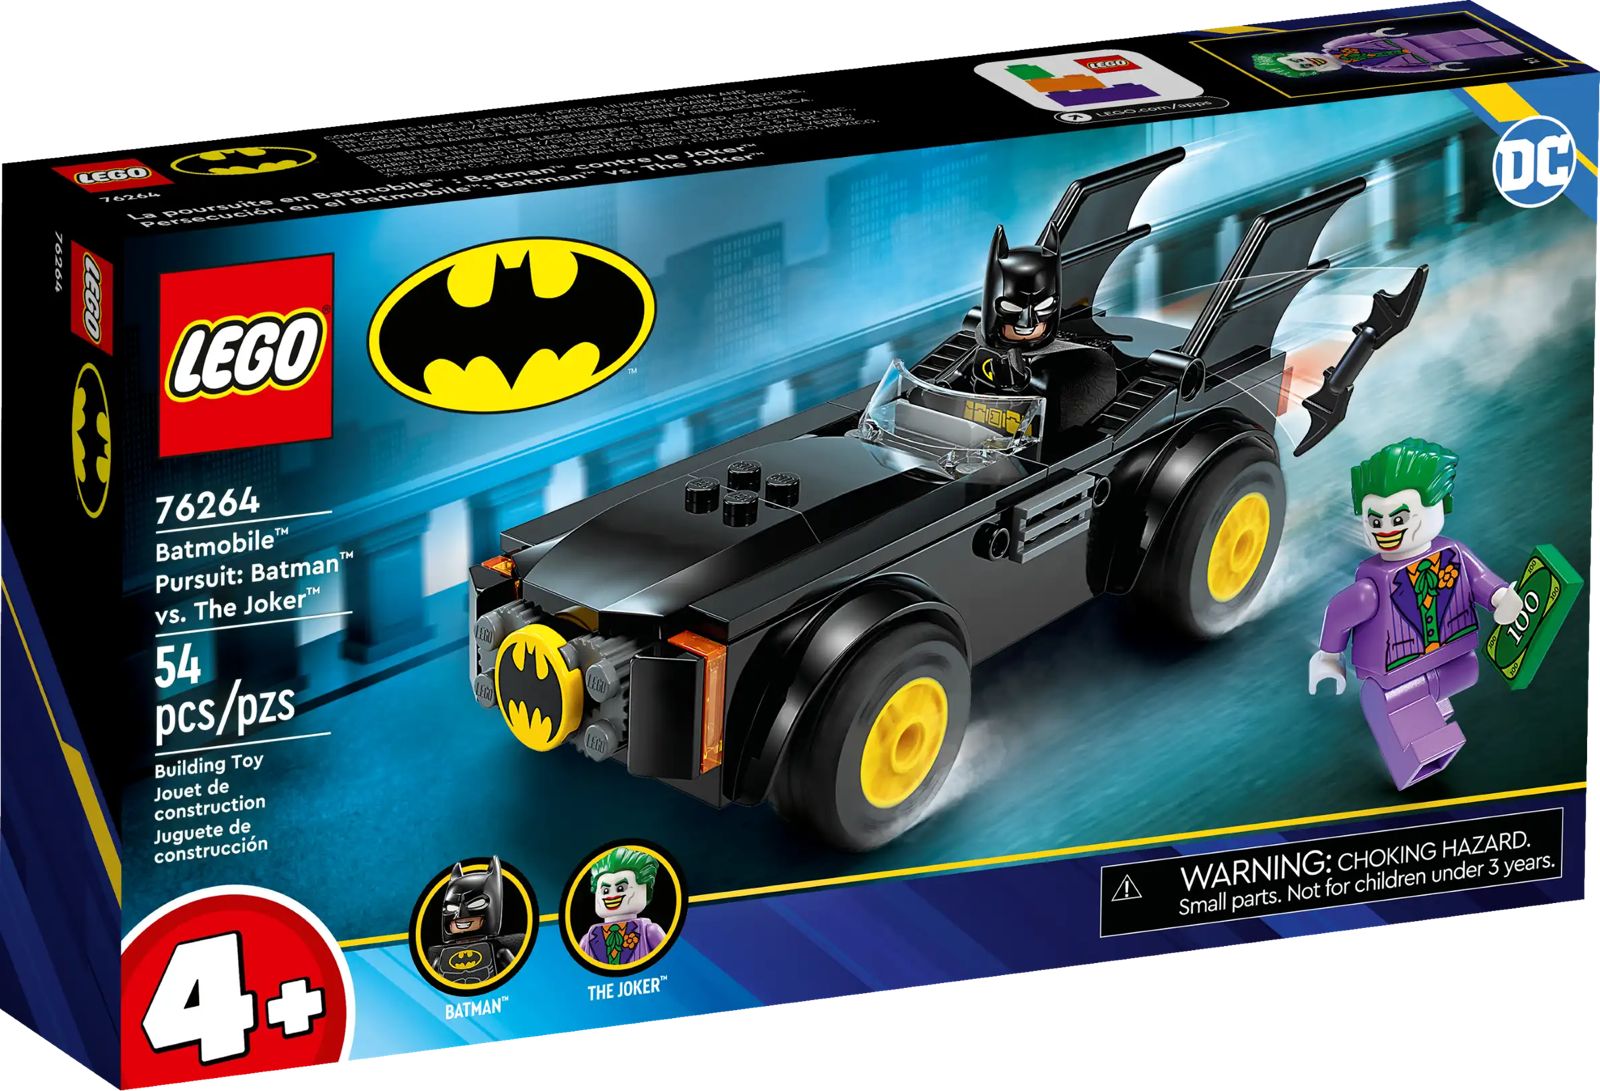 Lego Batman Persecución en el Batmobile Batman vs The Joker 76264